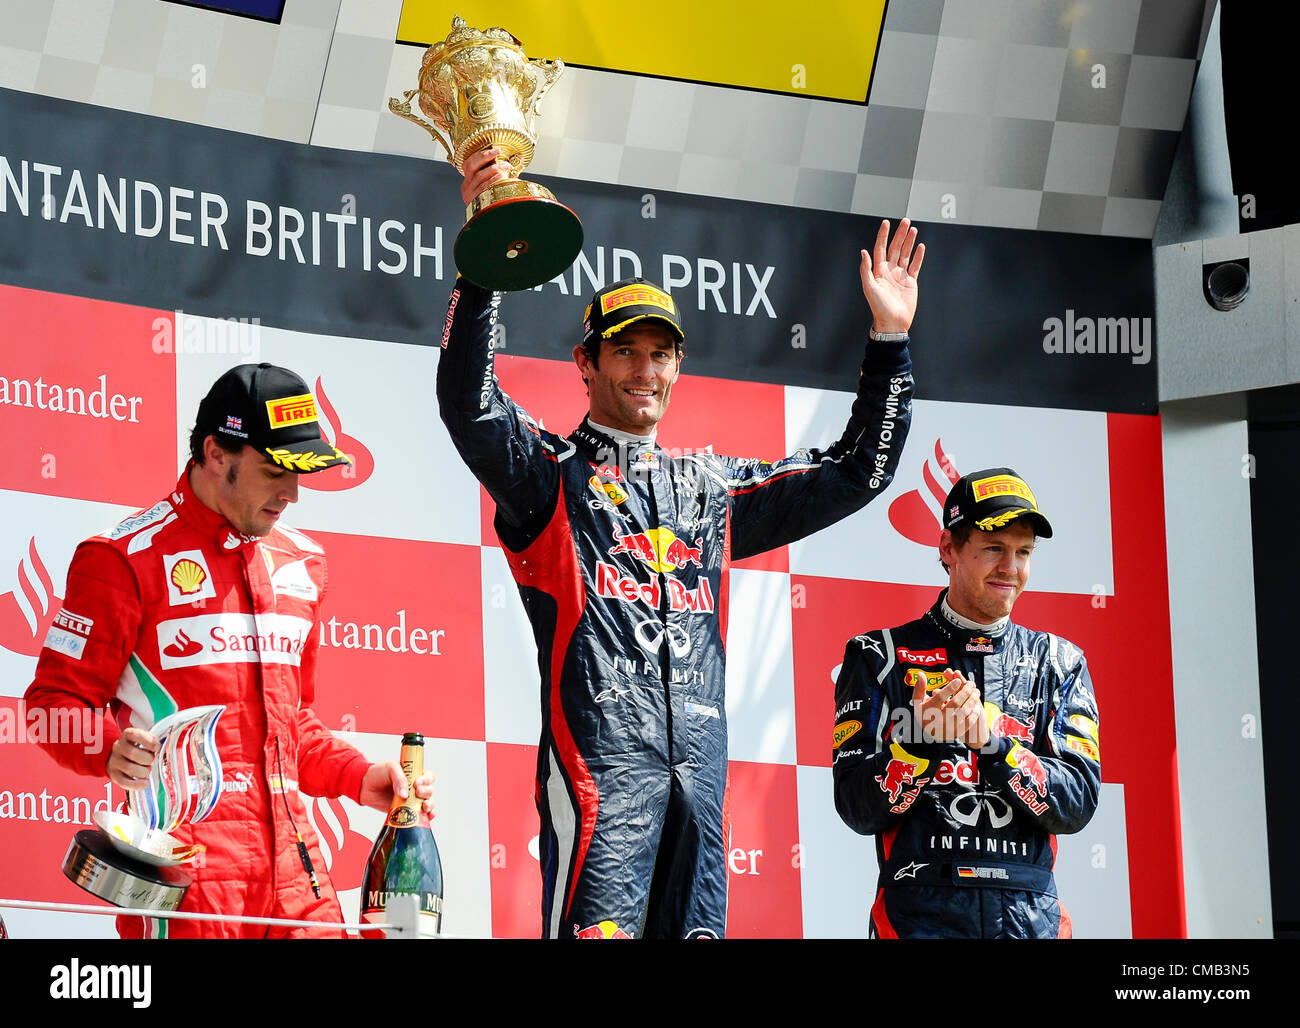 08.07.2012 Towcester, England. Mark Webber aus Australien und Red Bull Racing hebt seine Sieger-Trophäe auf dem Podium nach dem Rennen beim britischen Grand Prix Santander, Runde 9 der 2012 FIA Formel 1 Weltmeisterschaft in Silverstone. Stockfoto